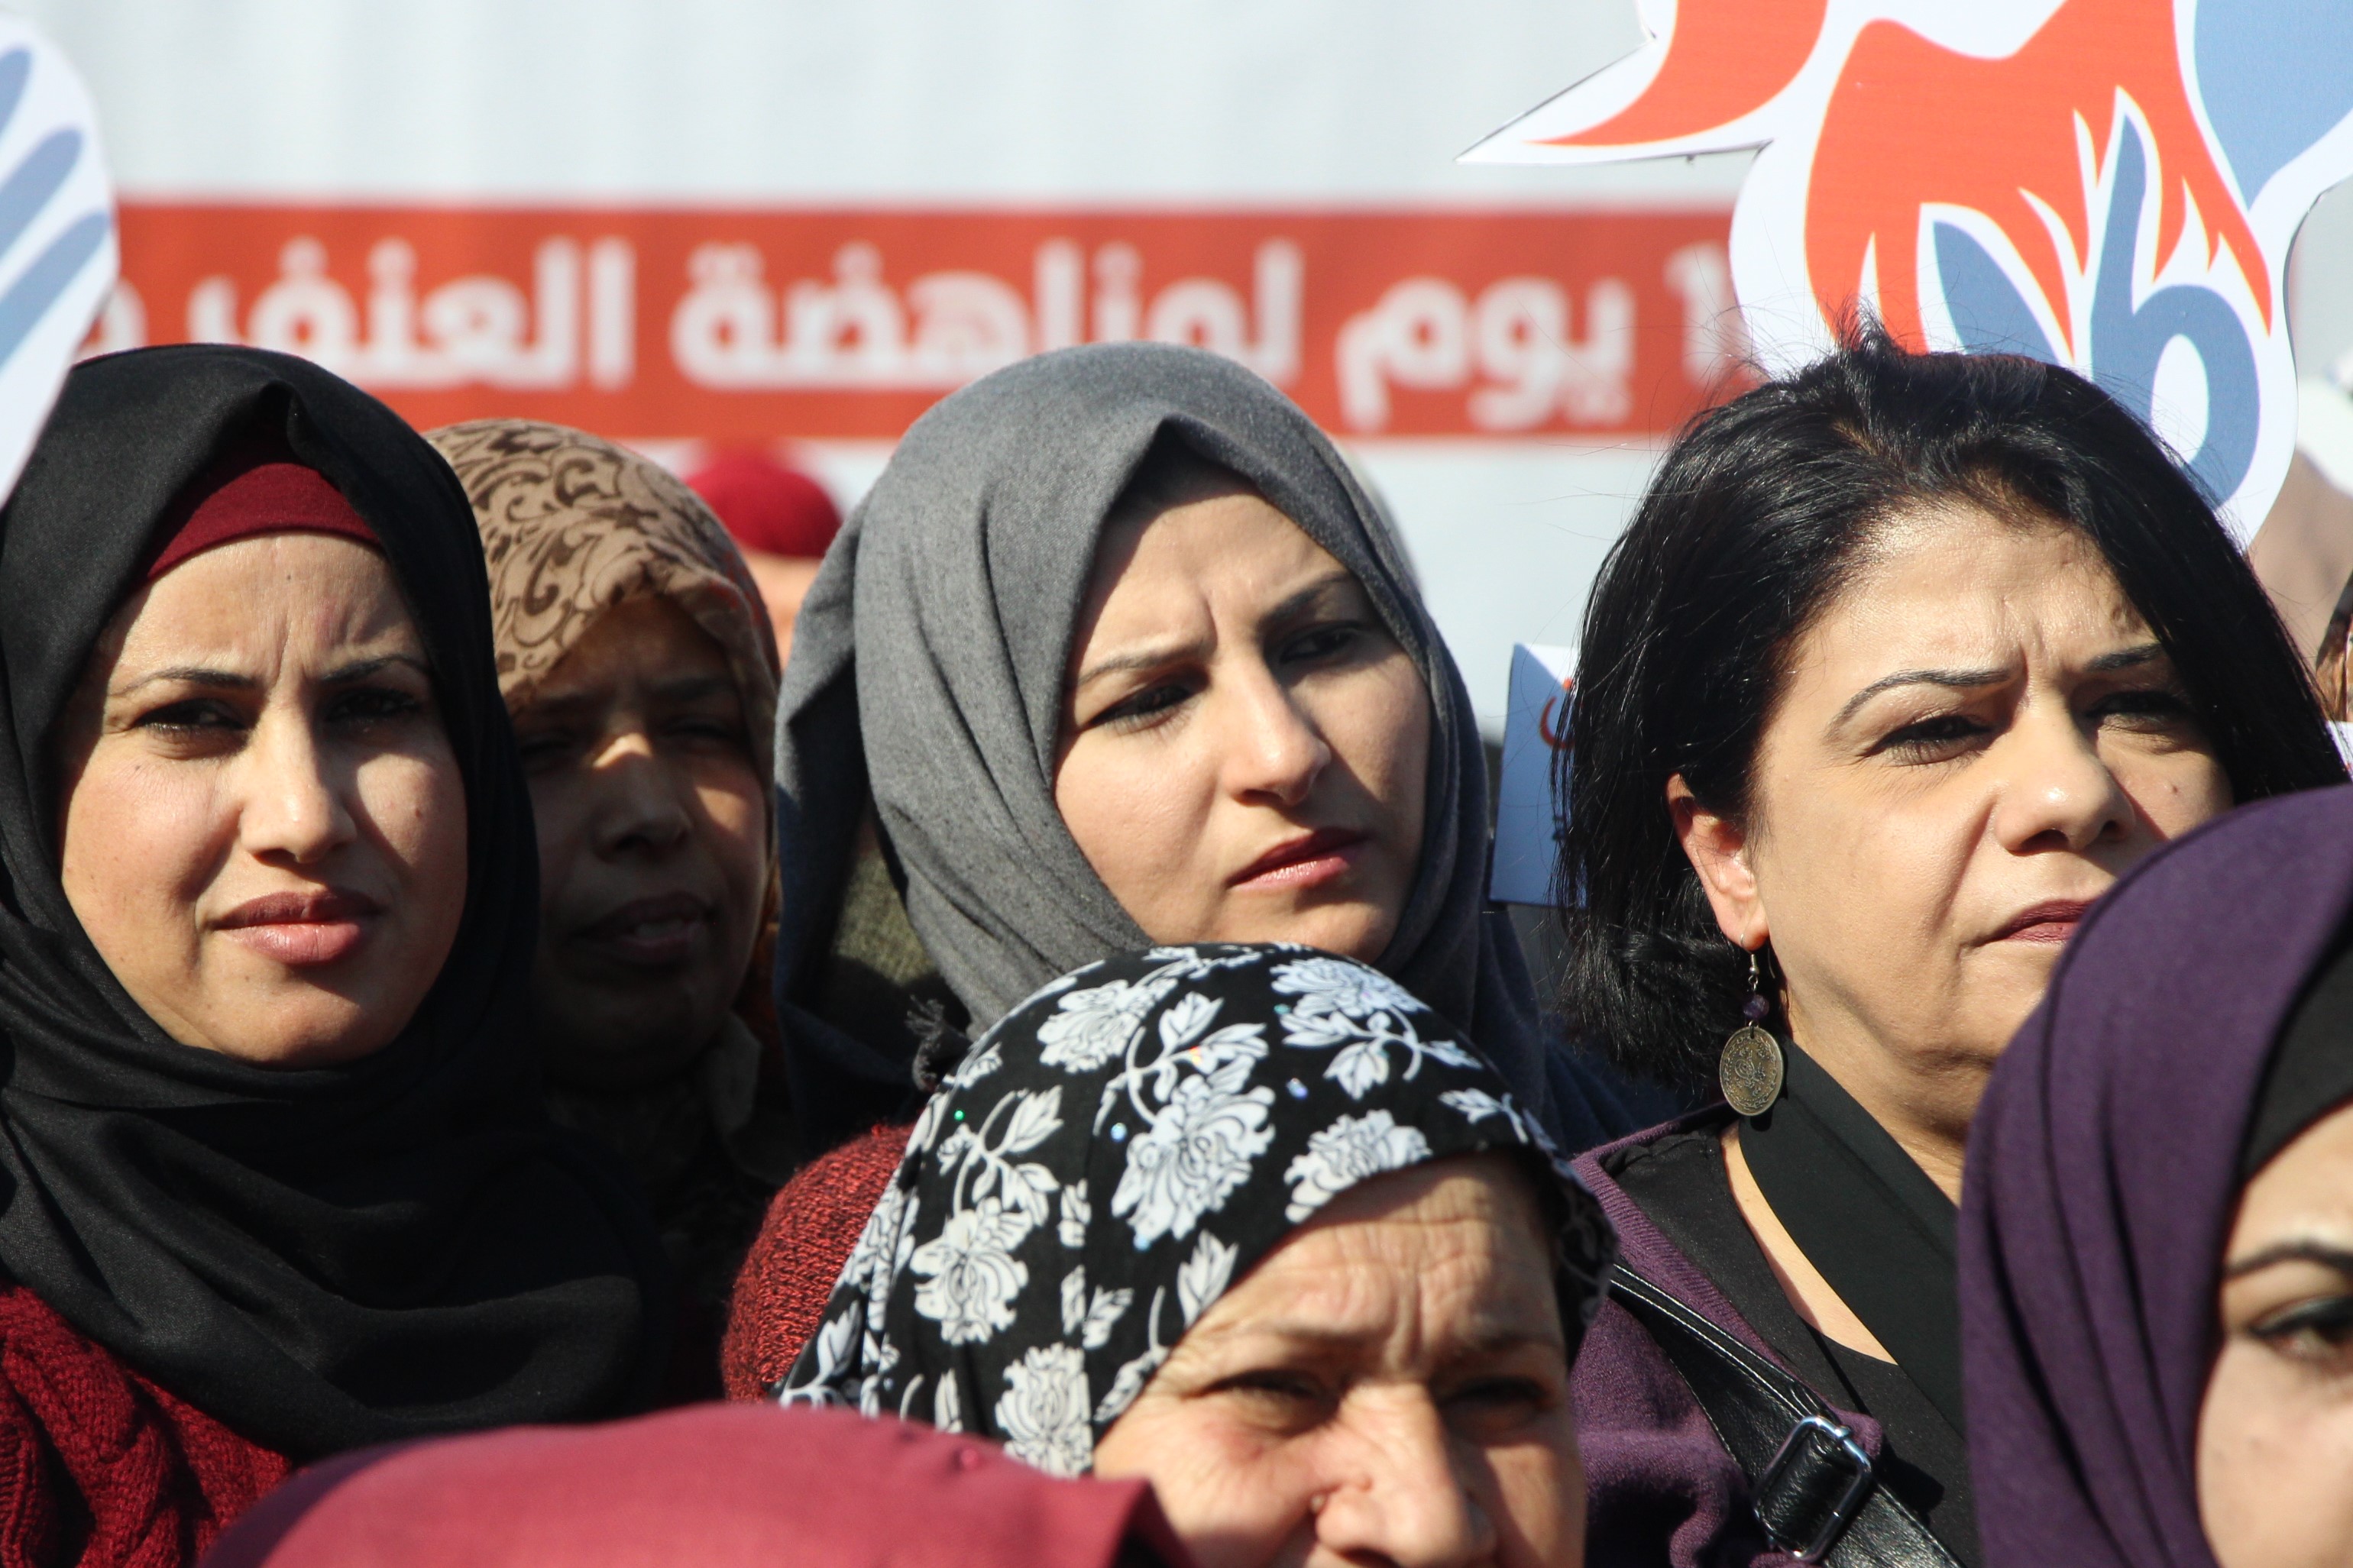 اتحاد لجان المرأة الفلسطينية يشارك في الوقفة التضامنية لقطاع المرأة في شبكة المنظمات الأهلية